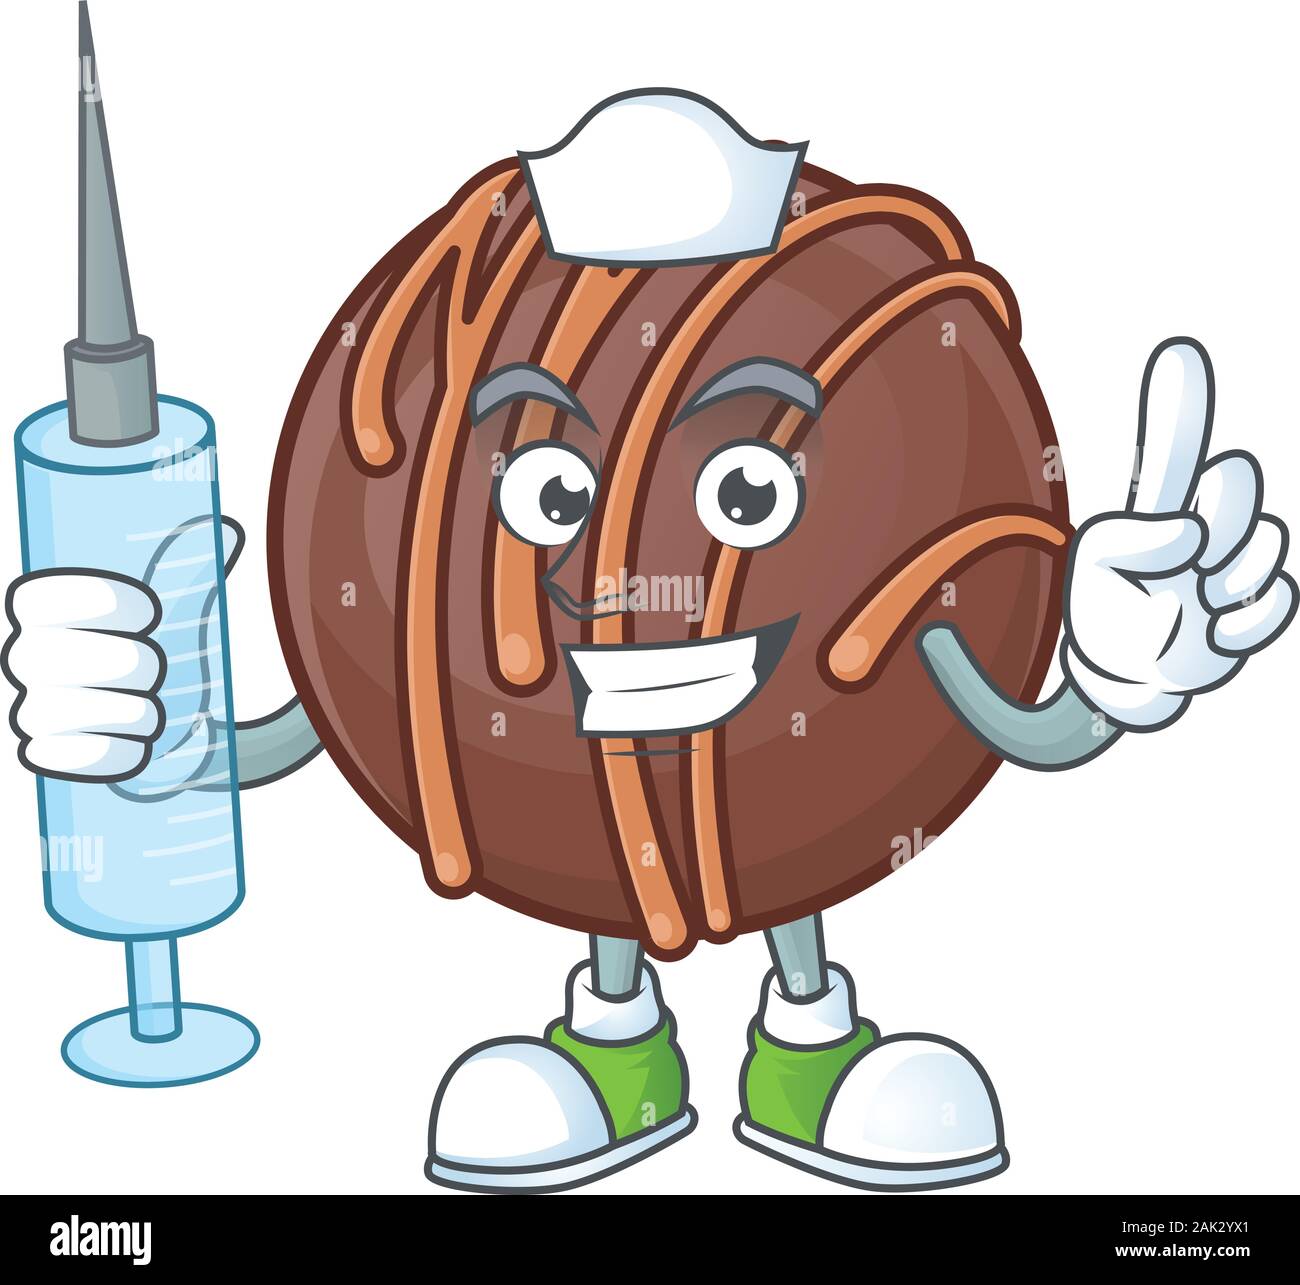 Smiley Krankenschwester Schokolade Kugel cartoon Charakter mit einer Spritze  Stock-Vektorgrafik - Alamy